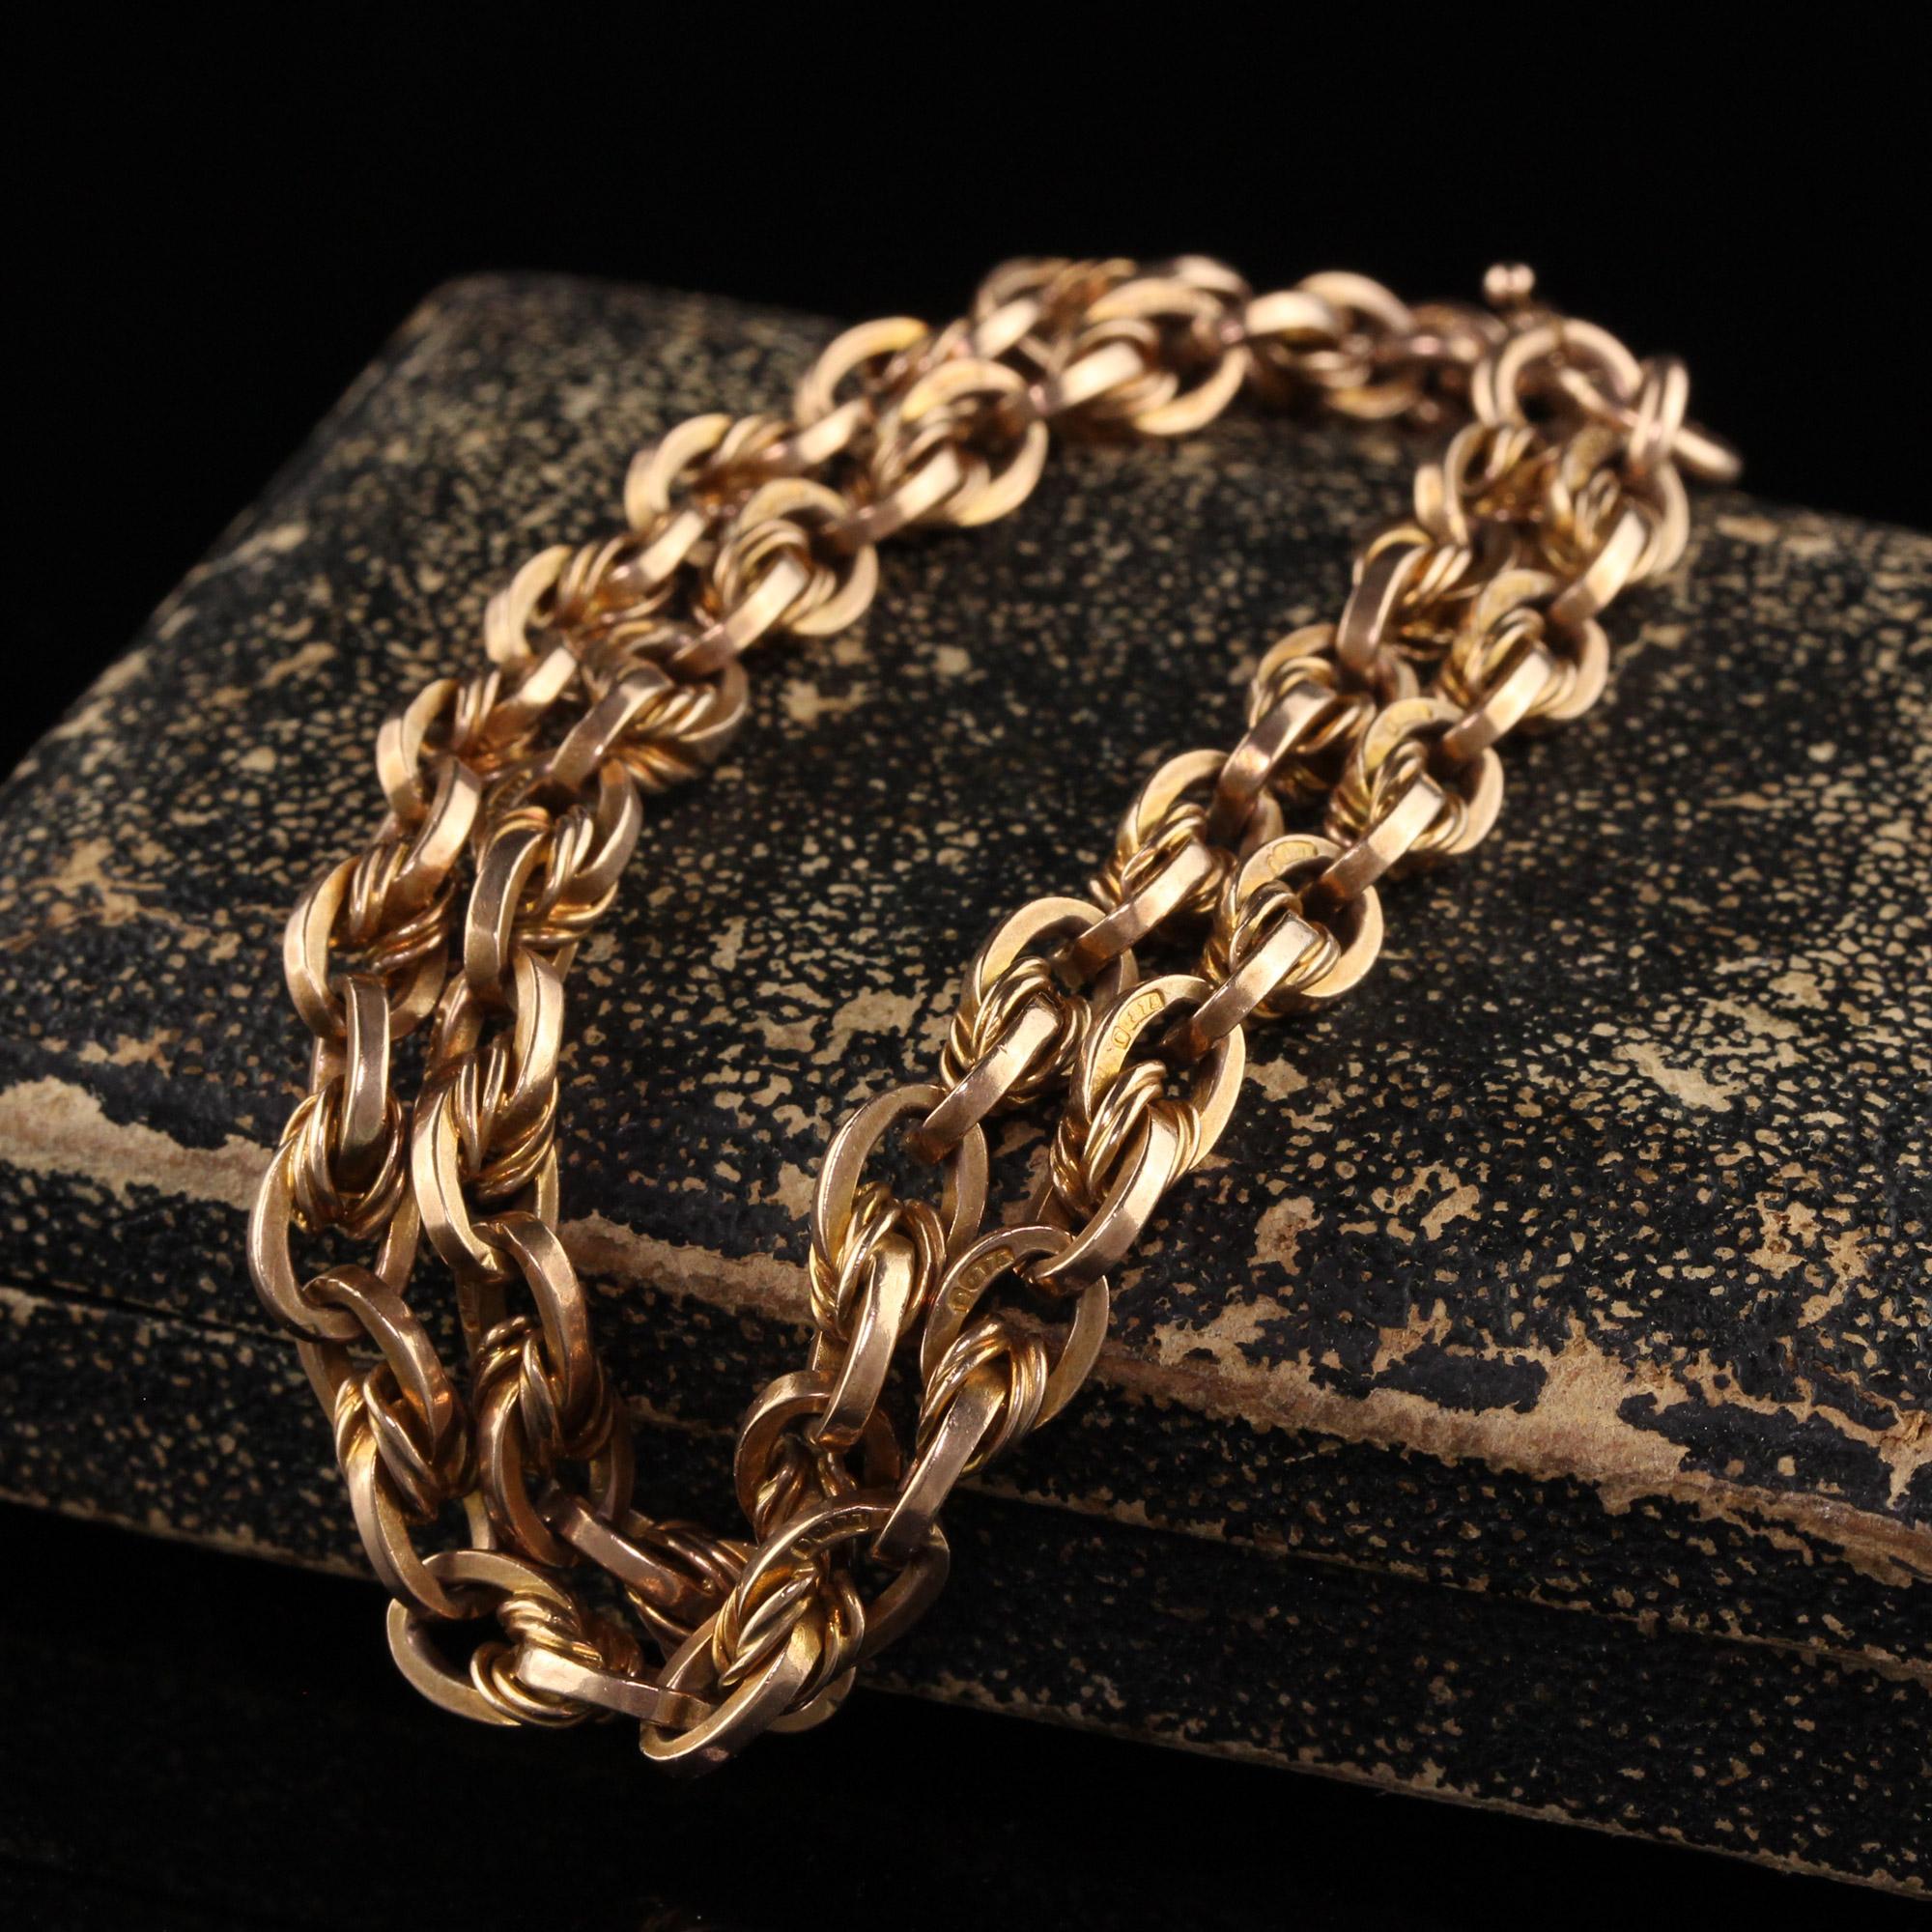 Schöne antike viktorianische 9K Gelbgold Twist Kette Armband. Dieses schöne Armband ist aus 9k Gelbgold gefertigt. Jedes Glied des Armbands ist mit .375 markiert und es ist in sehr gutem Zustand.

Artikel #B0061

Metall: 9K Gelbgold

Gewicht: 23,5